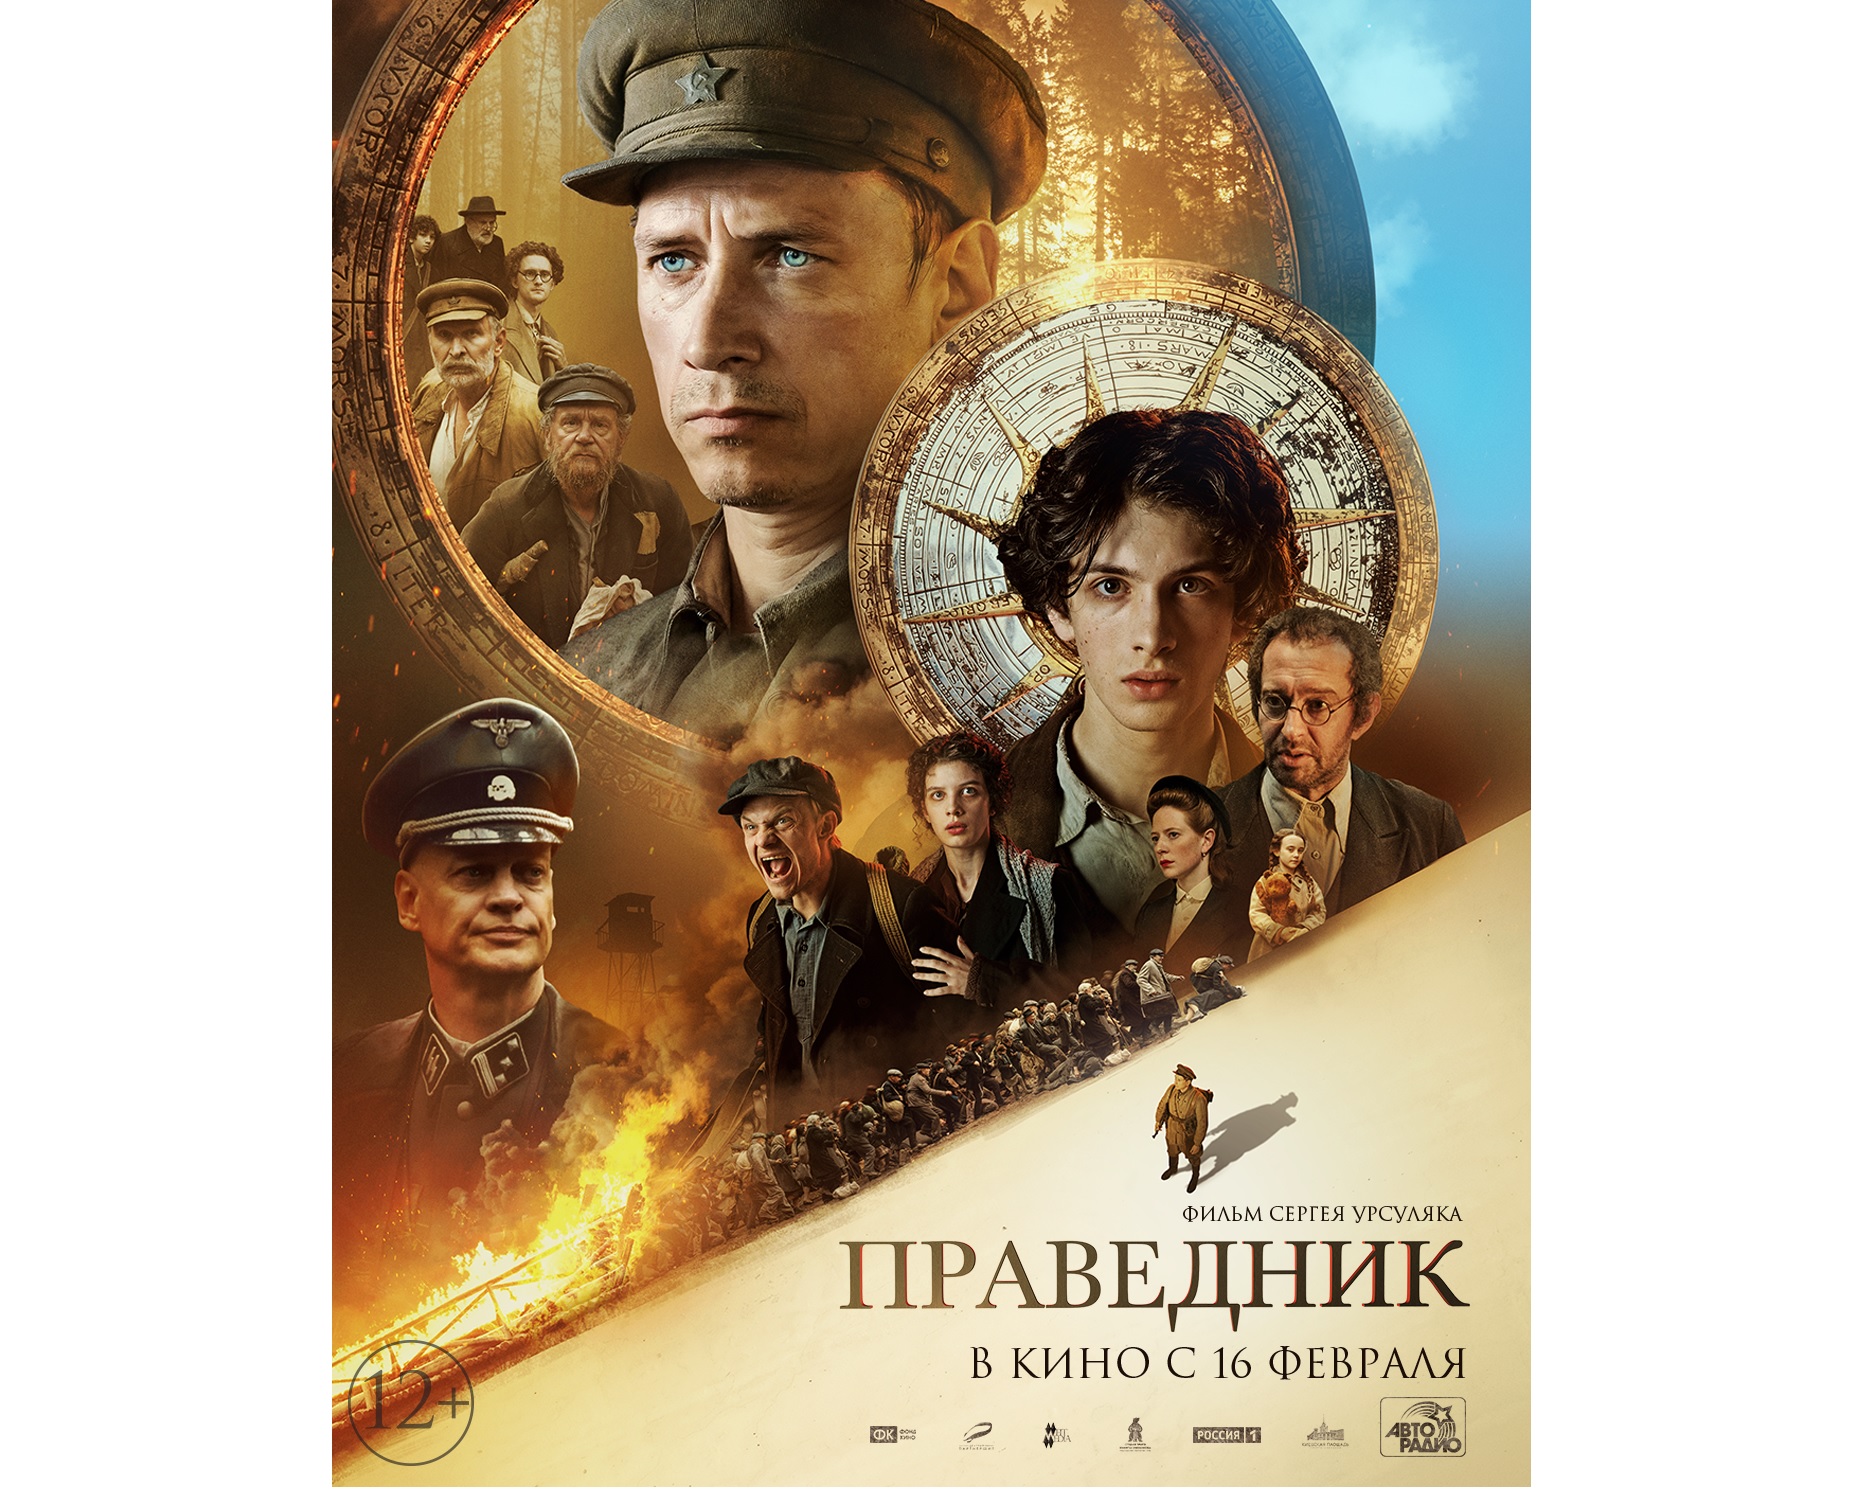 В России вышли трейлер и постер к фильму «Праведник»